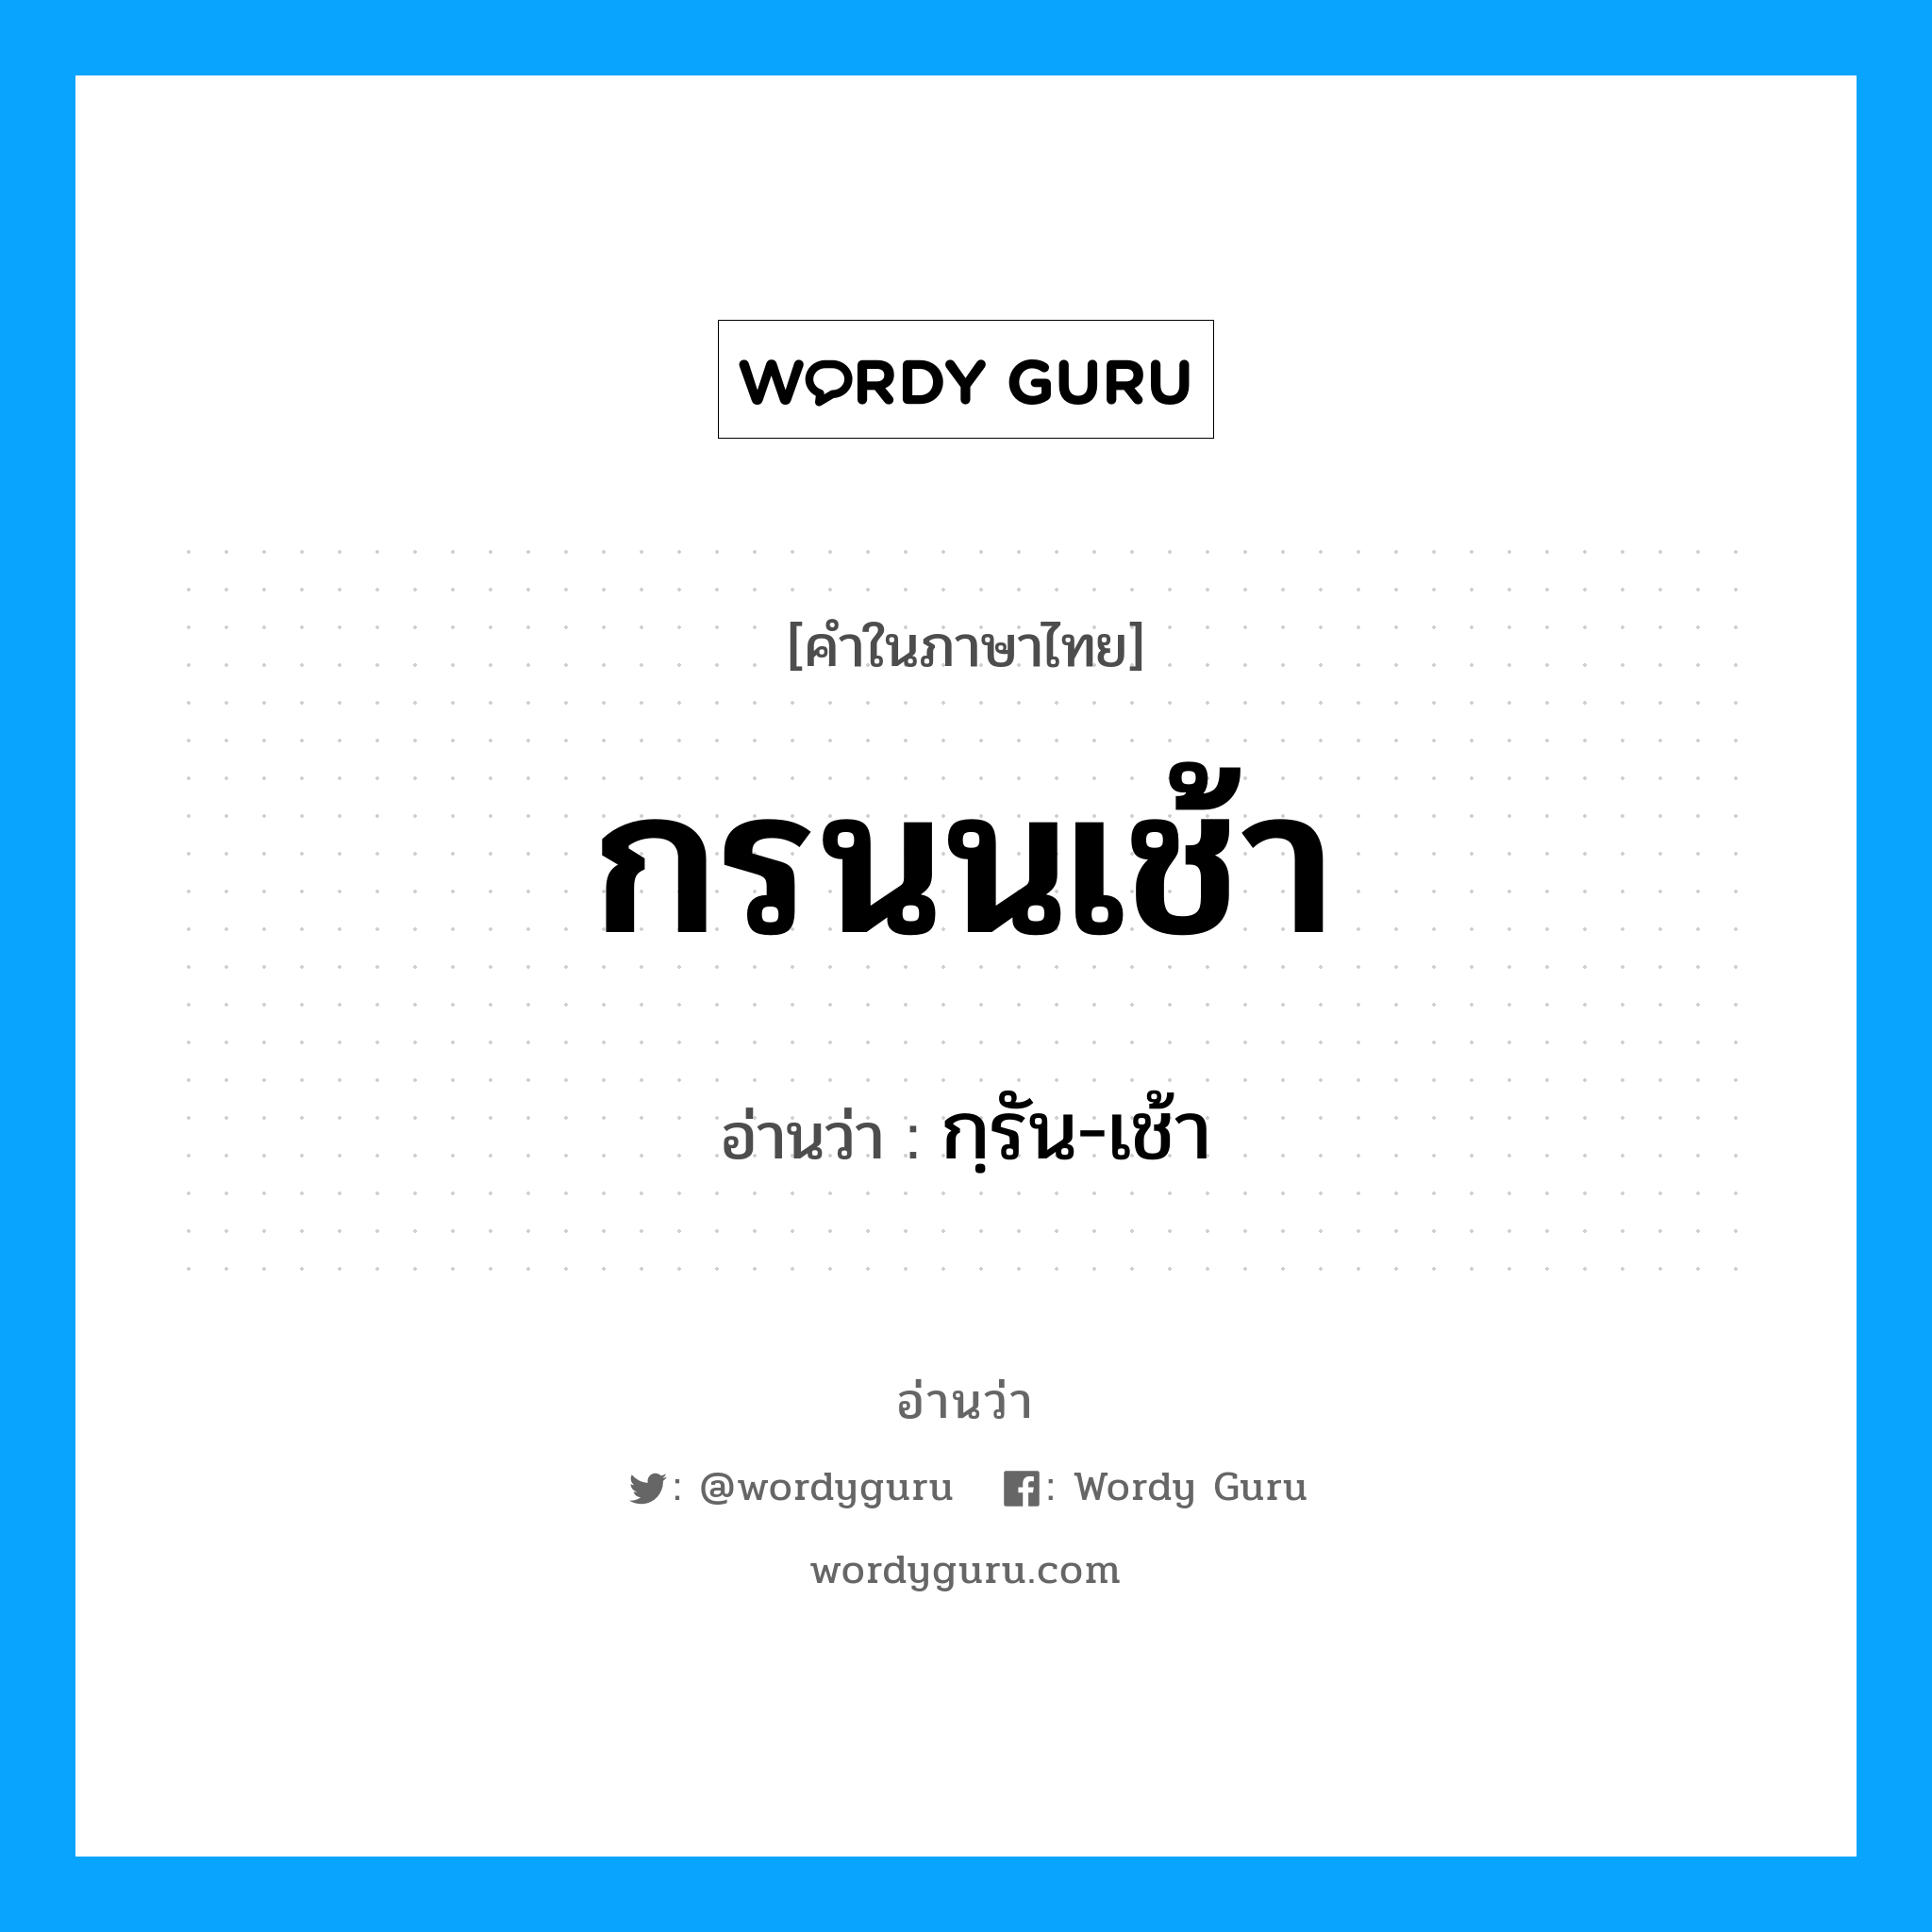 กฺรัน-เช้า เป็นคำอ่านของคำไหน?, คำในภาษาไทย กฺรัน-เช้า อ่านว่า กรนนเช้า